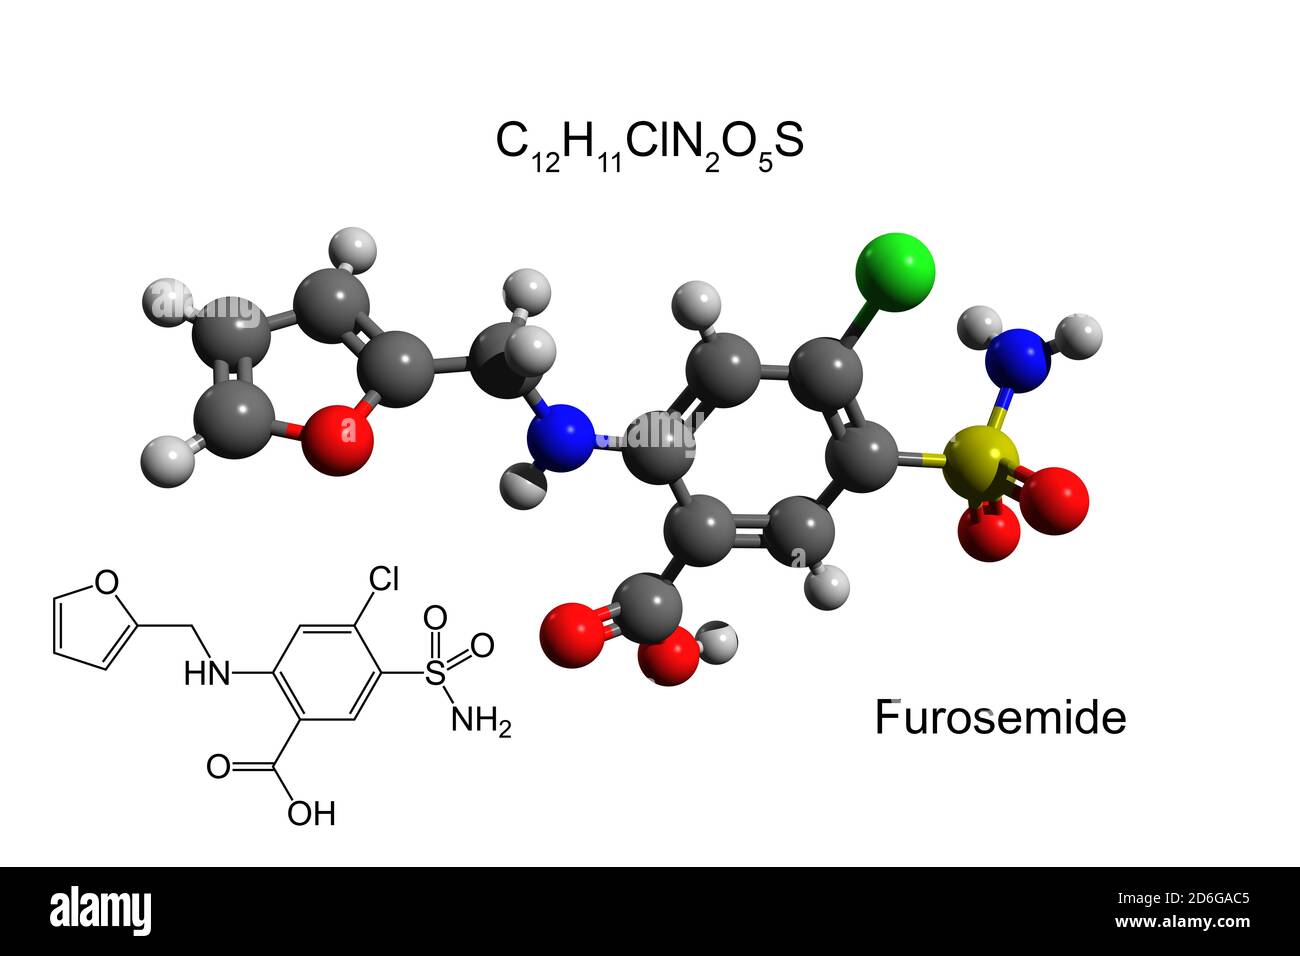 Formule chimique, formule structurale et modèle 3D boule-et-bâton de furosémide, un médicament diurétique, fond blanc Banque D'Images